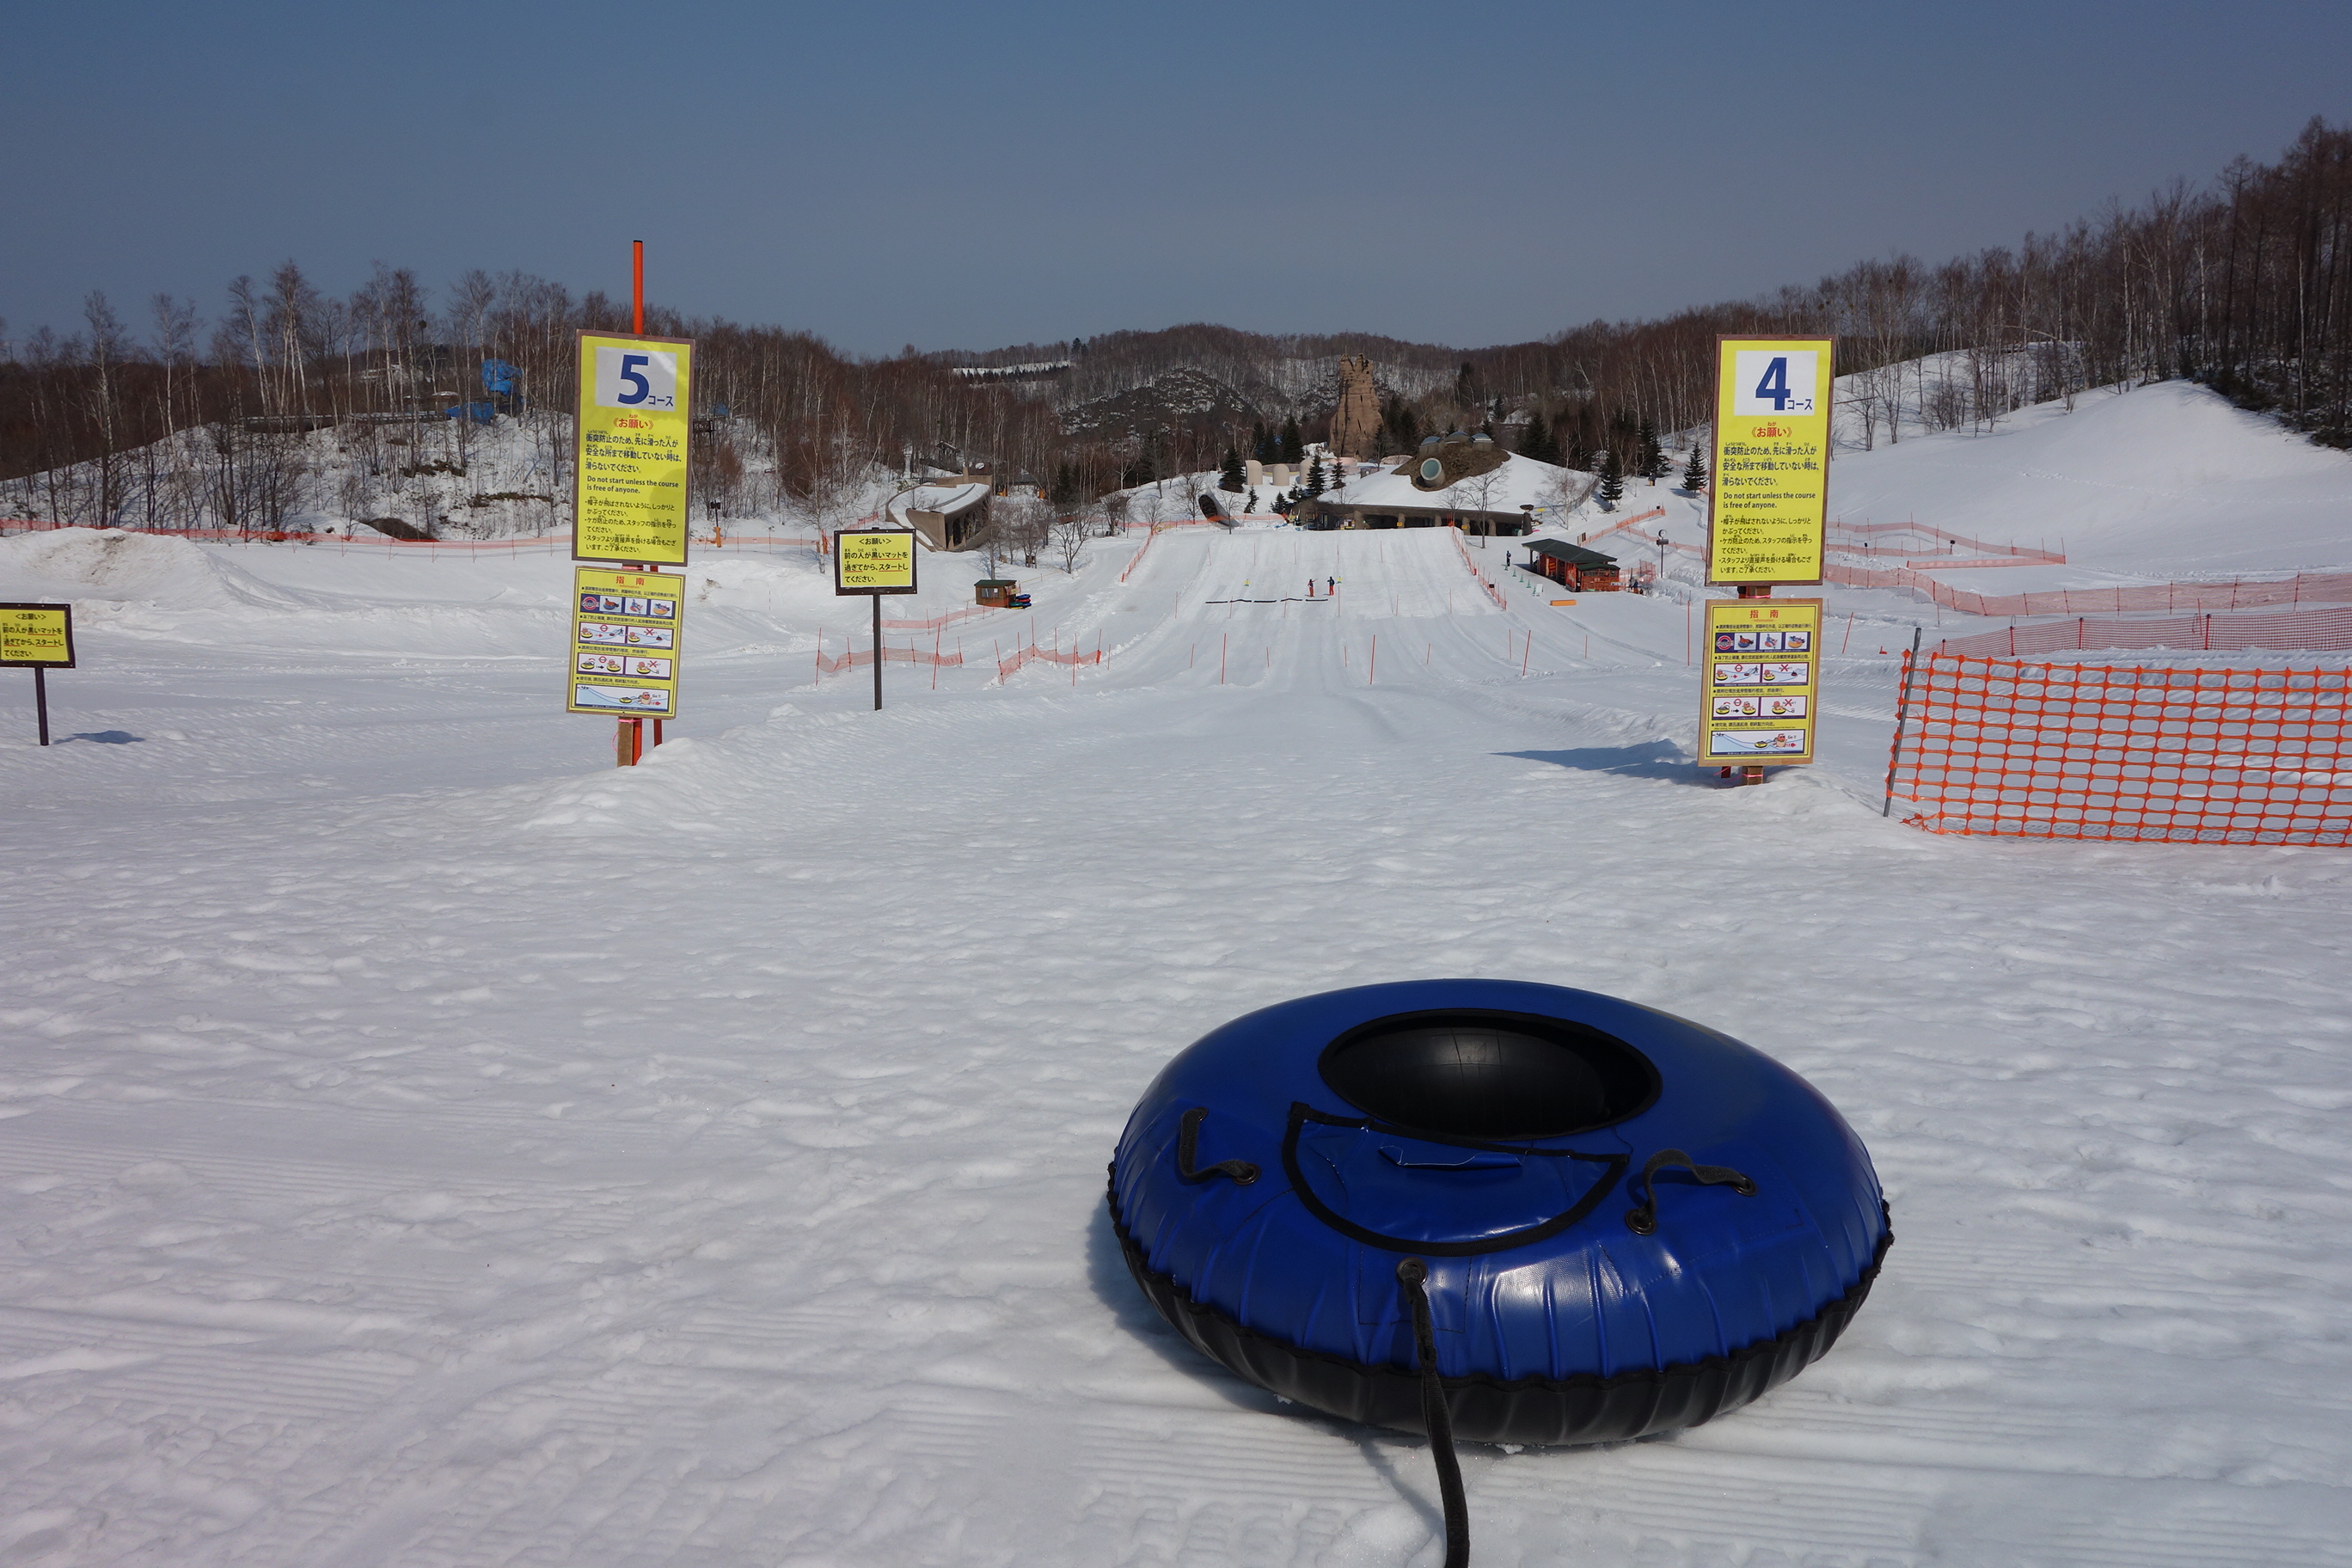 札幌免費玩雪、滑雪教學「滝野鈴蘭公園」北海道冬天親子好去處